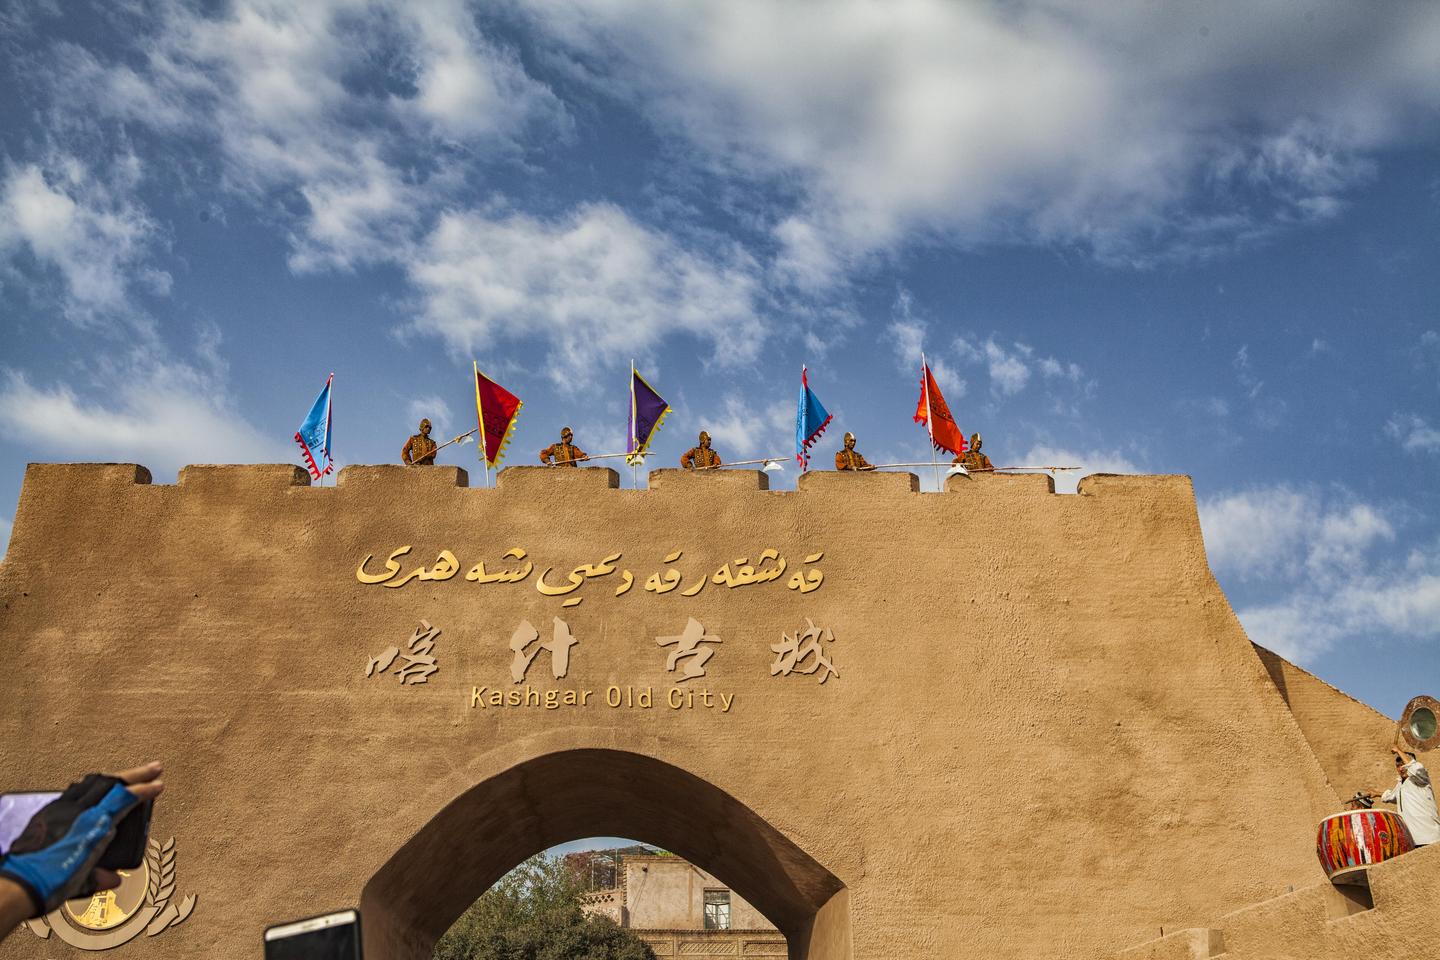 喀什旅游景点游遍中国